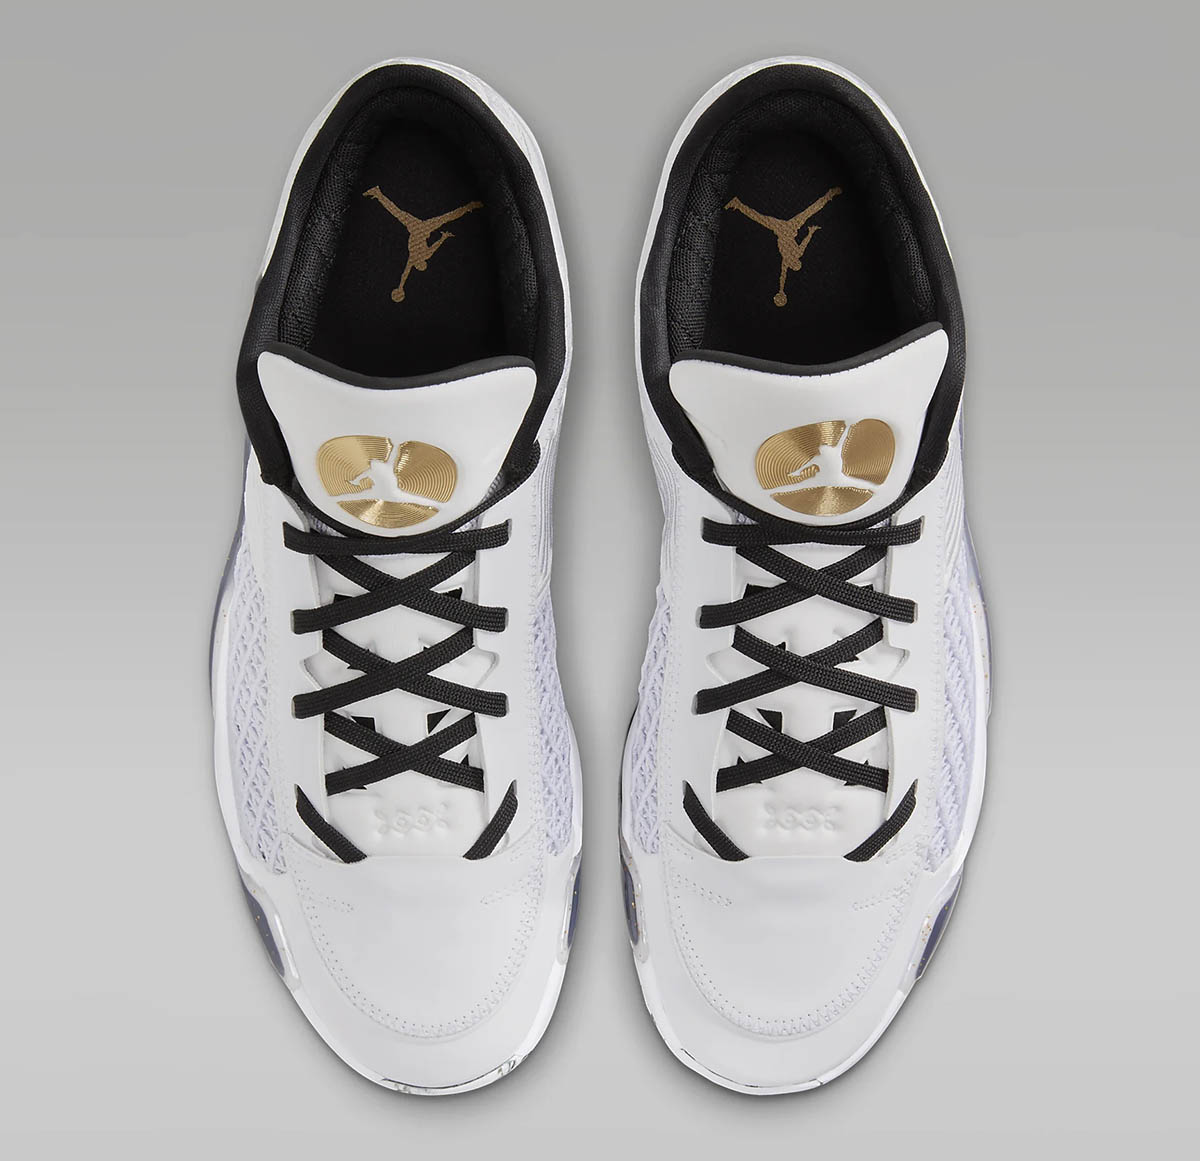 Air Jordan 38 Low White Metallic Gold Black Shoes 4